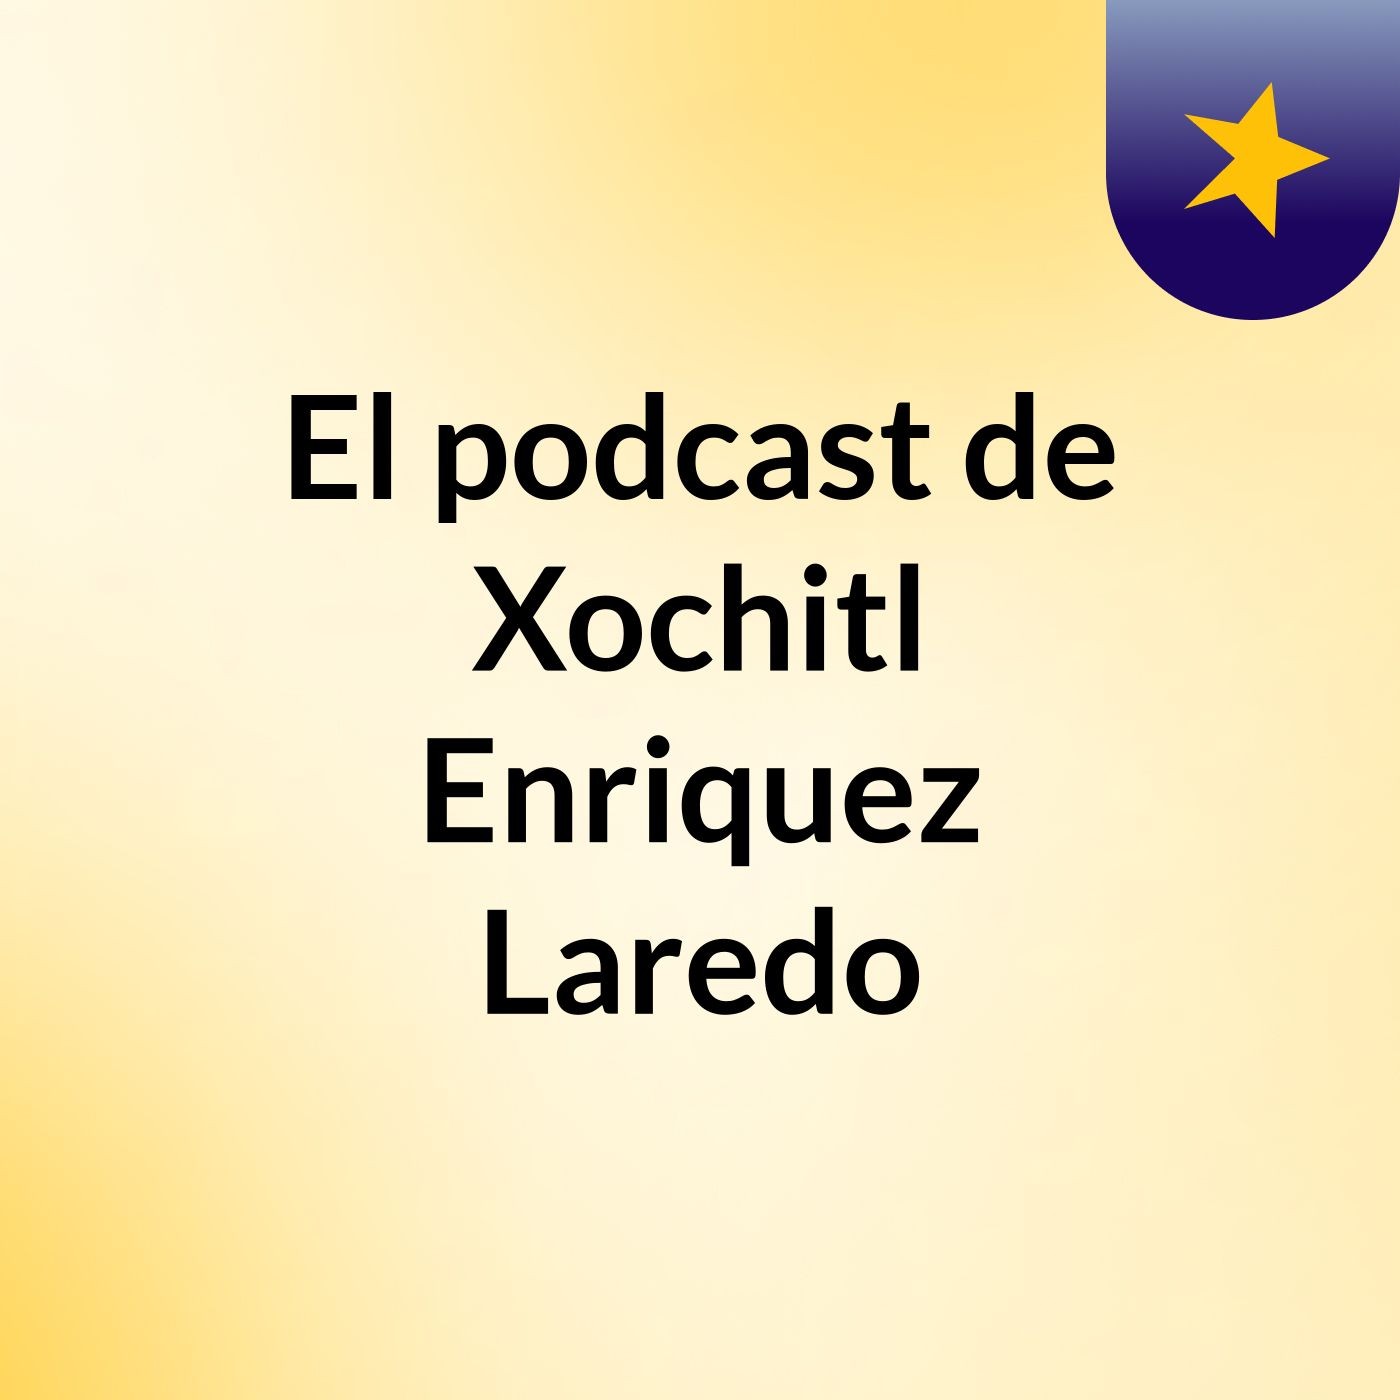 El podcast de Xochitl Enriquez Laredo